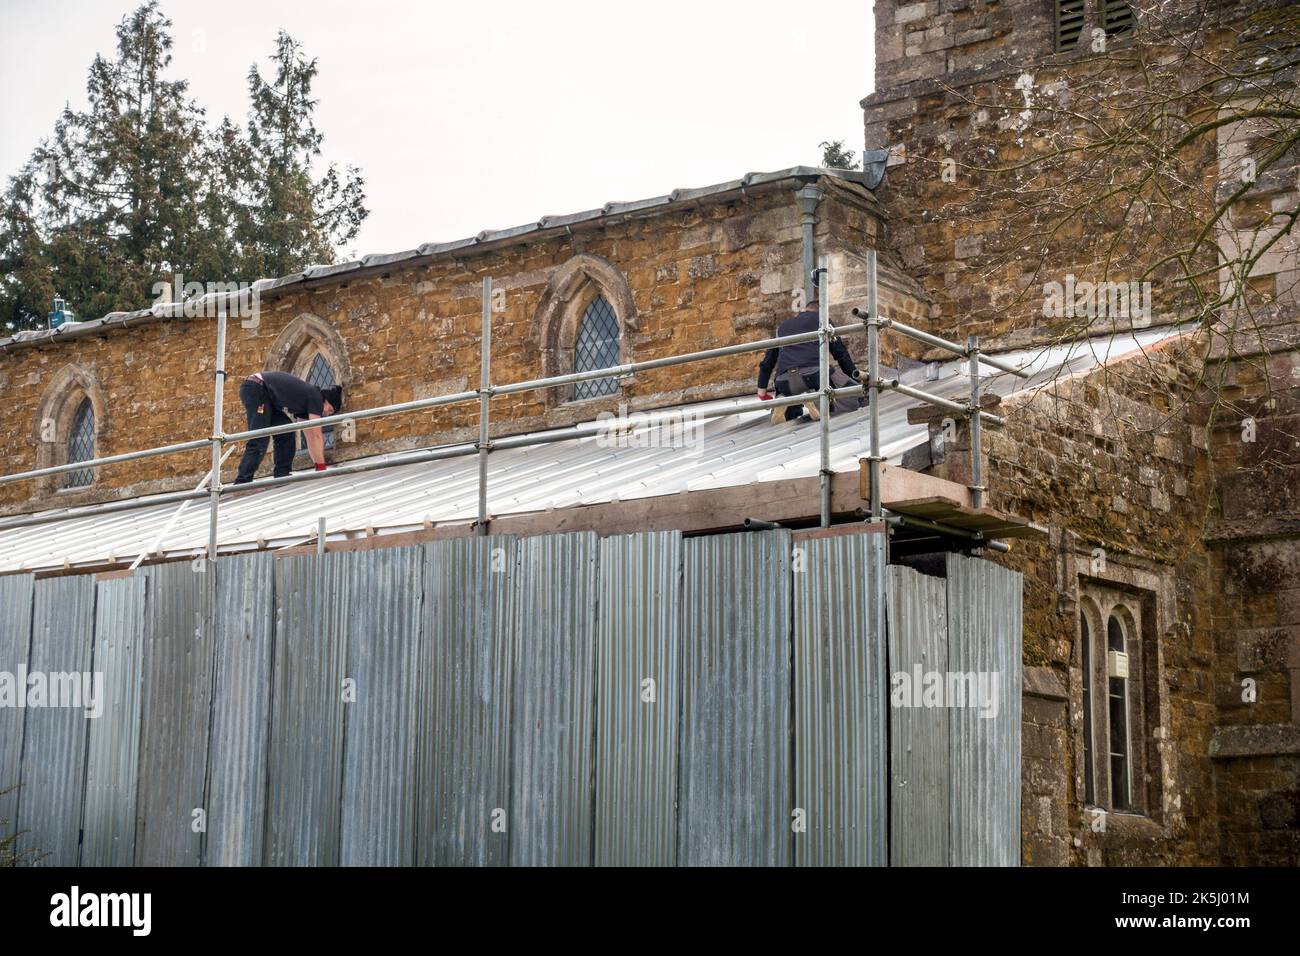 Ouvriers remplaçant le toit de l'église après le vol de plomb du toit précédent, Église St Mary's, Burrough on the Hill, Leicestershire, Angleterre, Royaume-Uni Banque D'Images